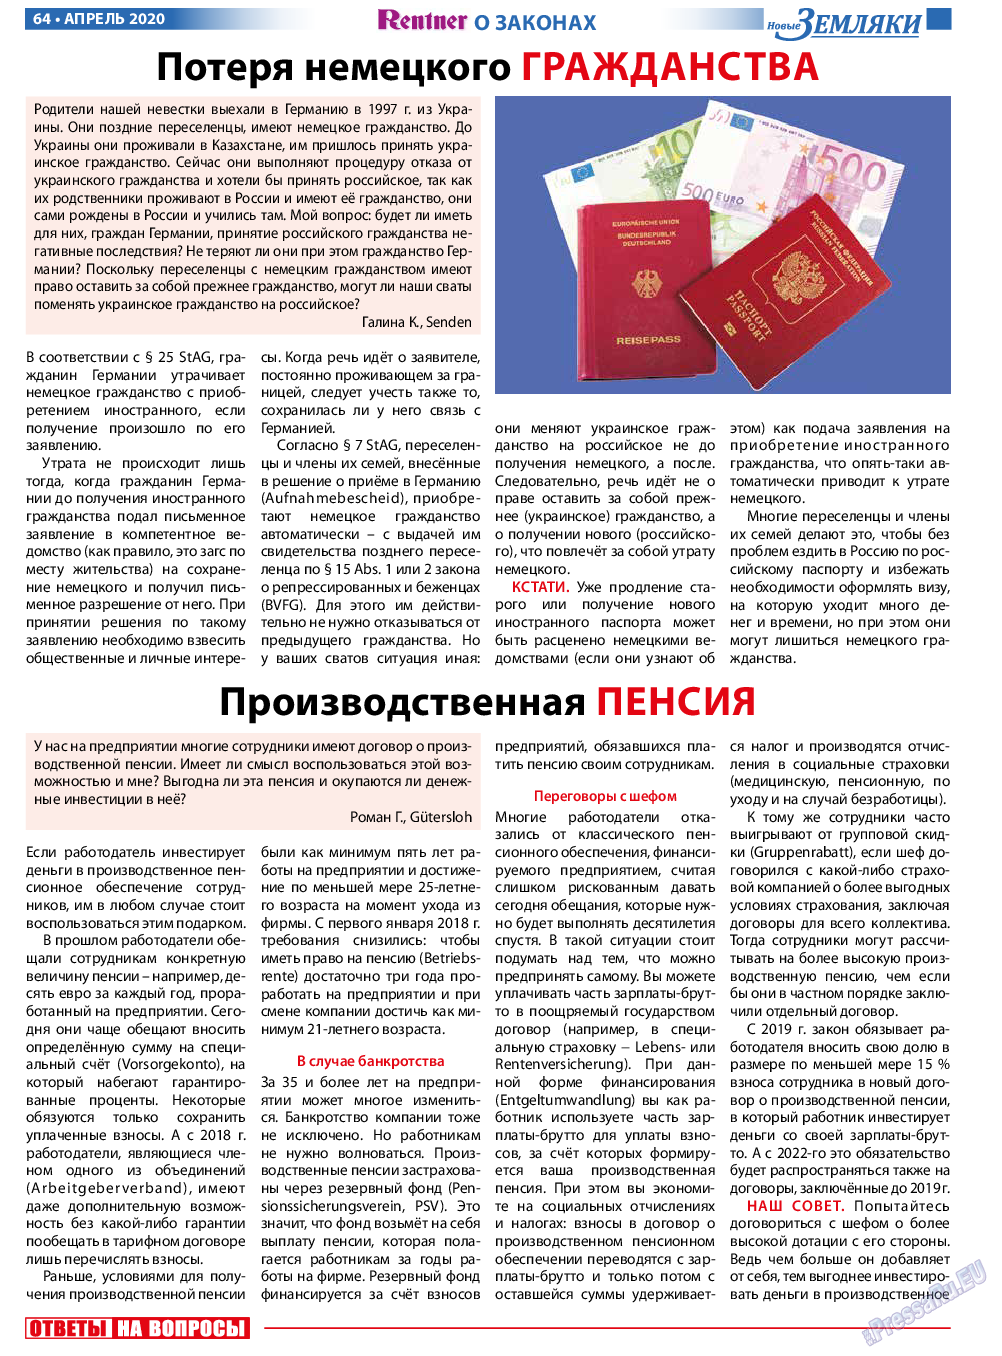 Новые Земляки (газета). 2020 год, номер 4, стр. 64